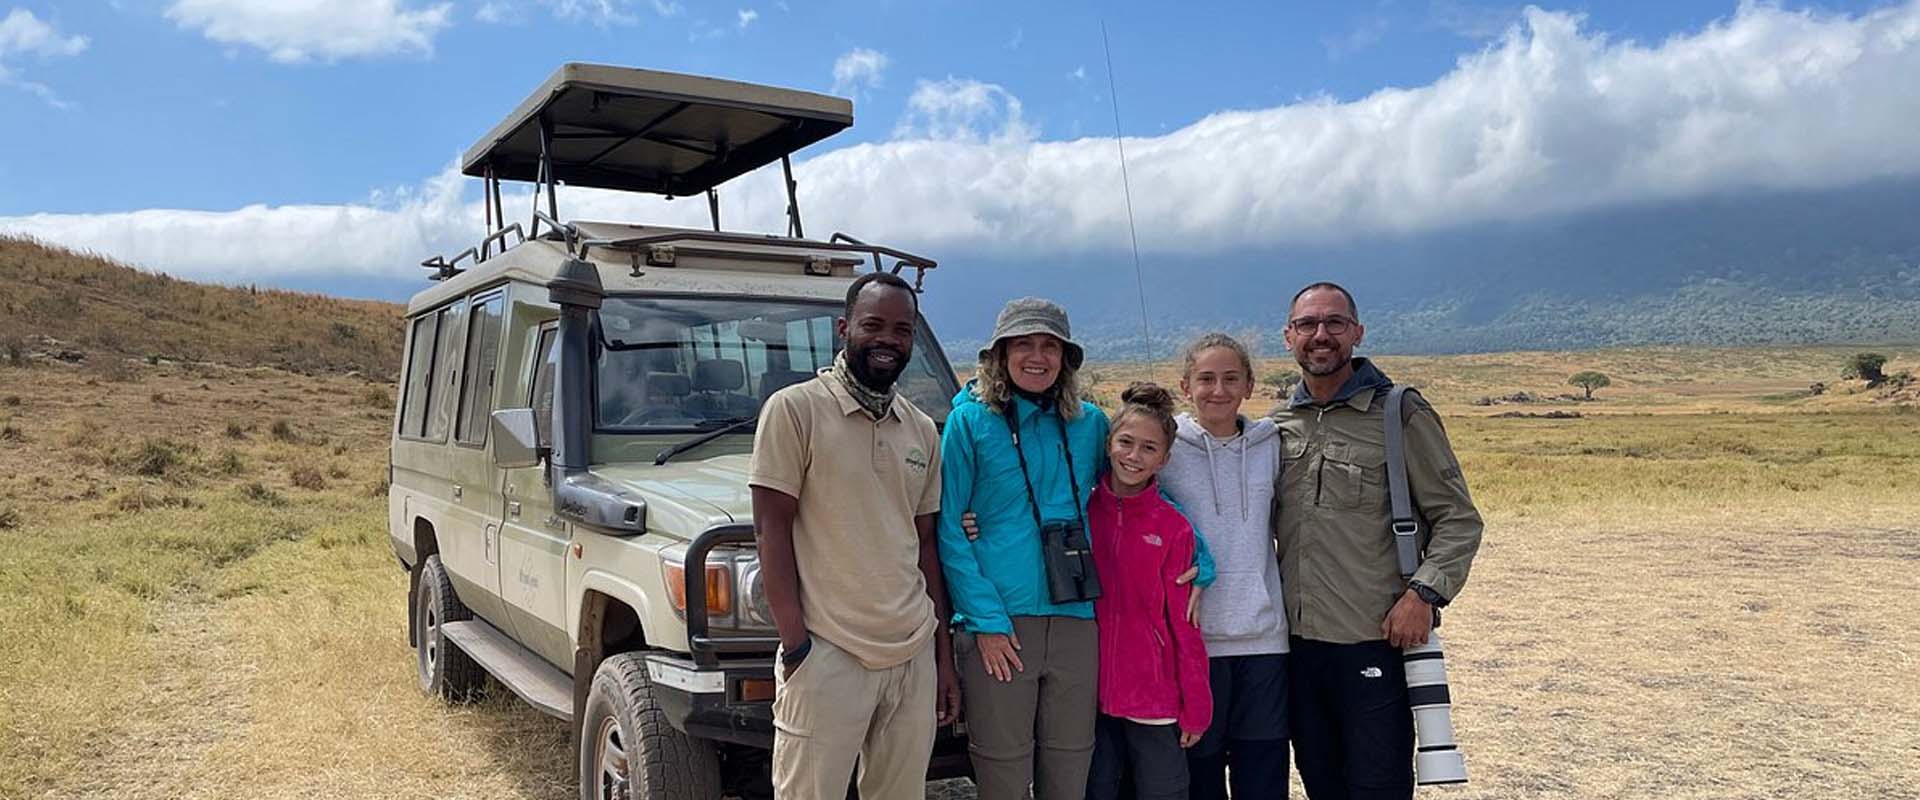  How To Book A Safari In Tanzania